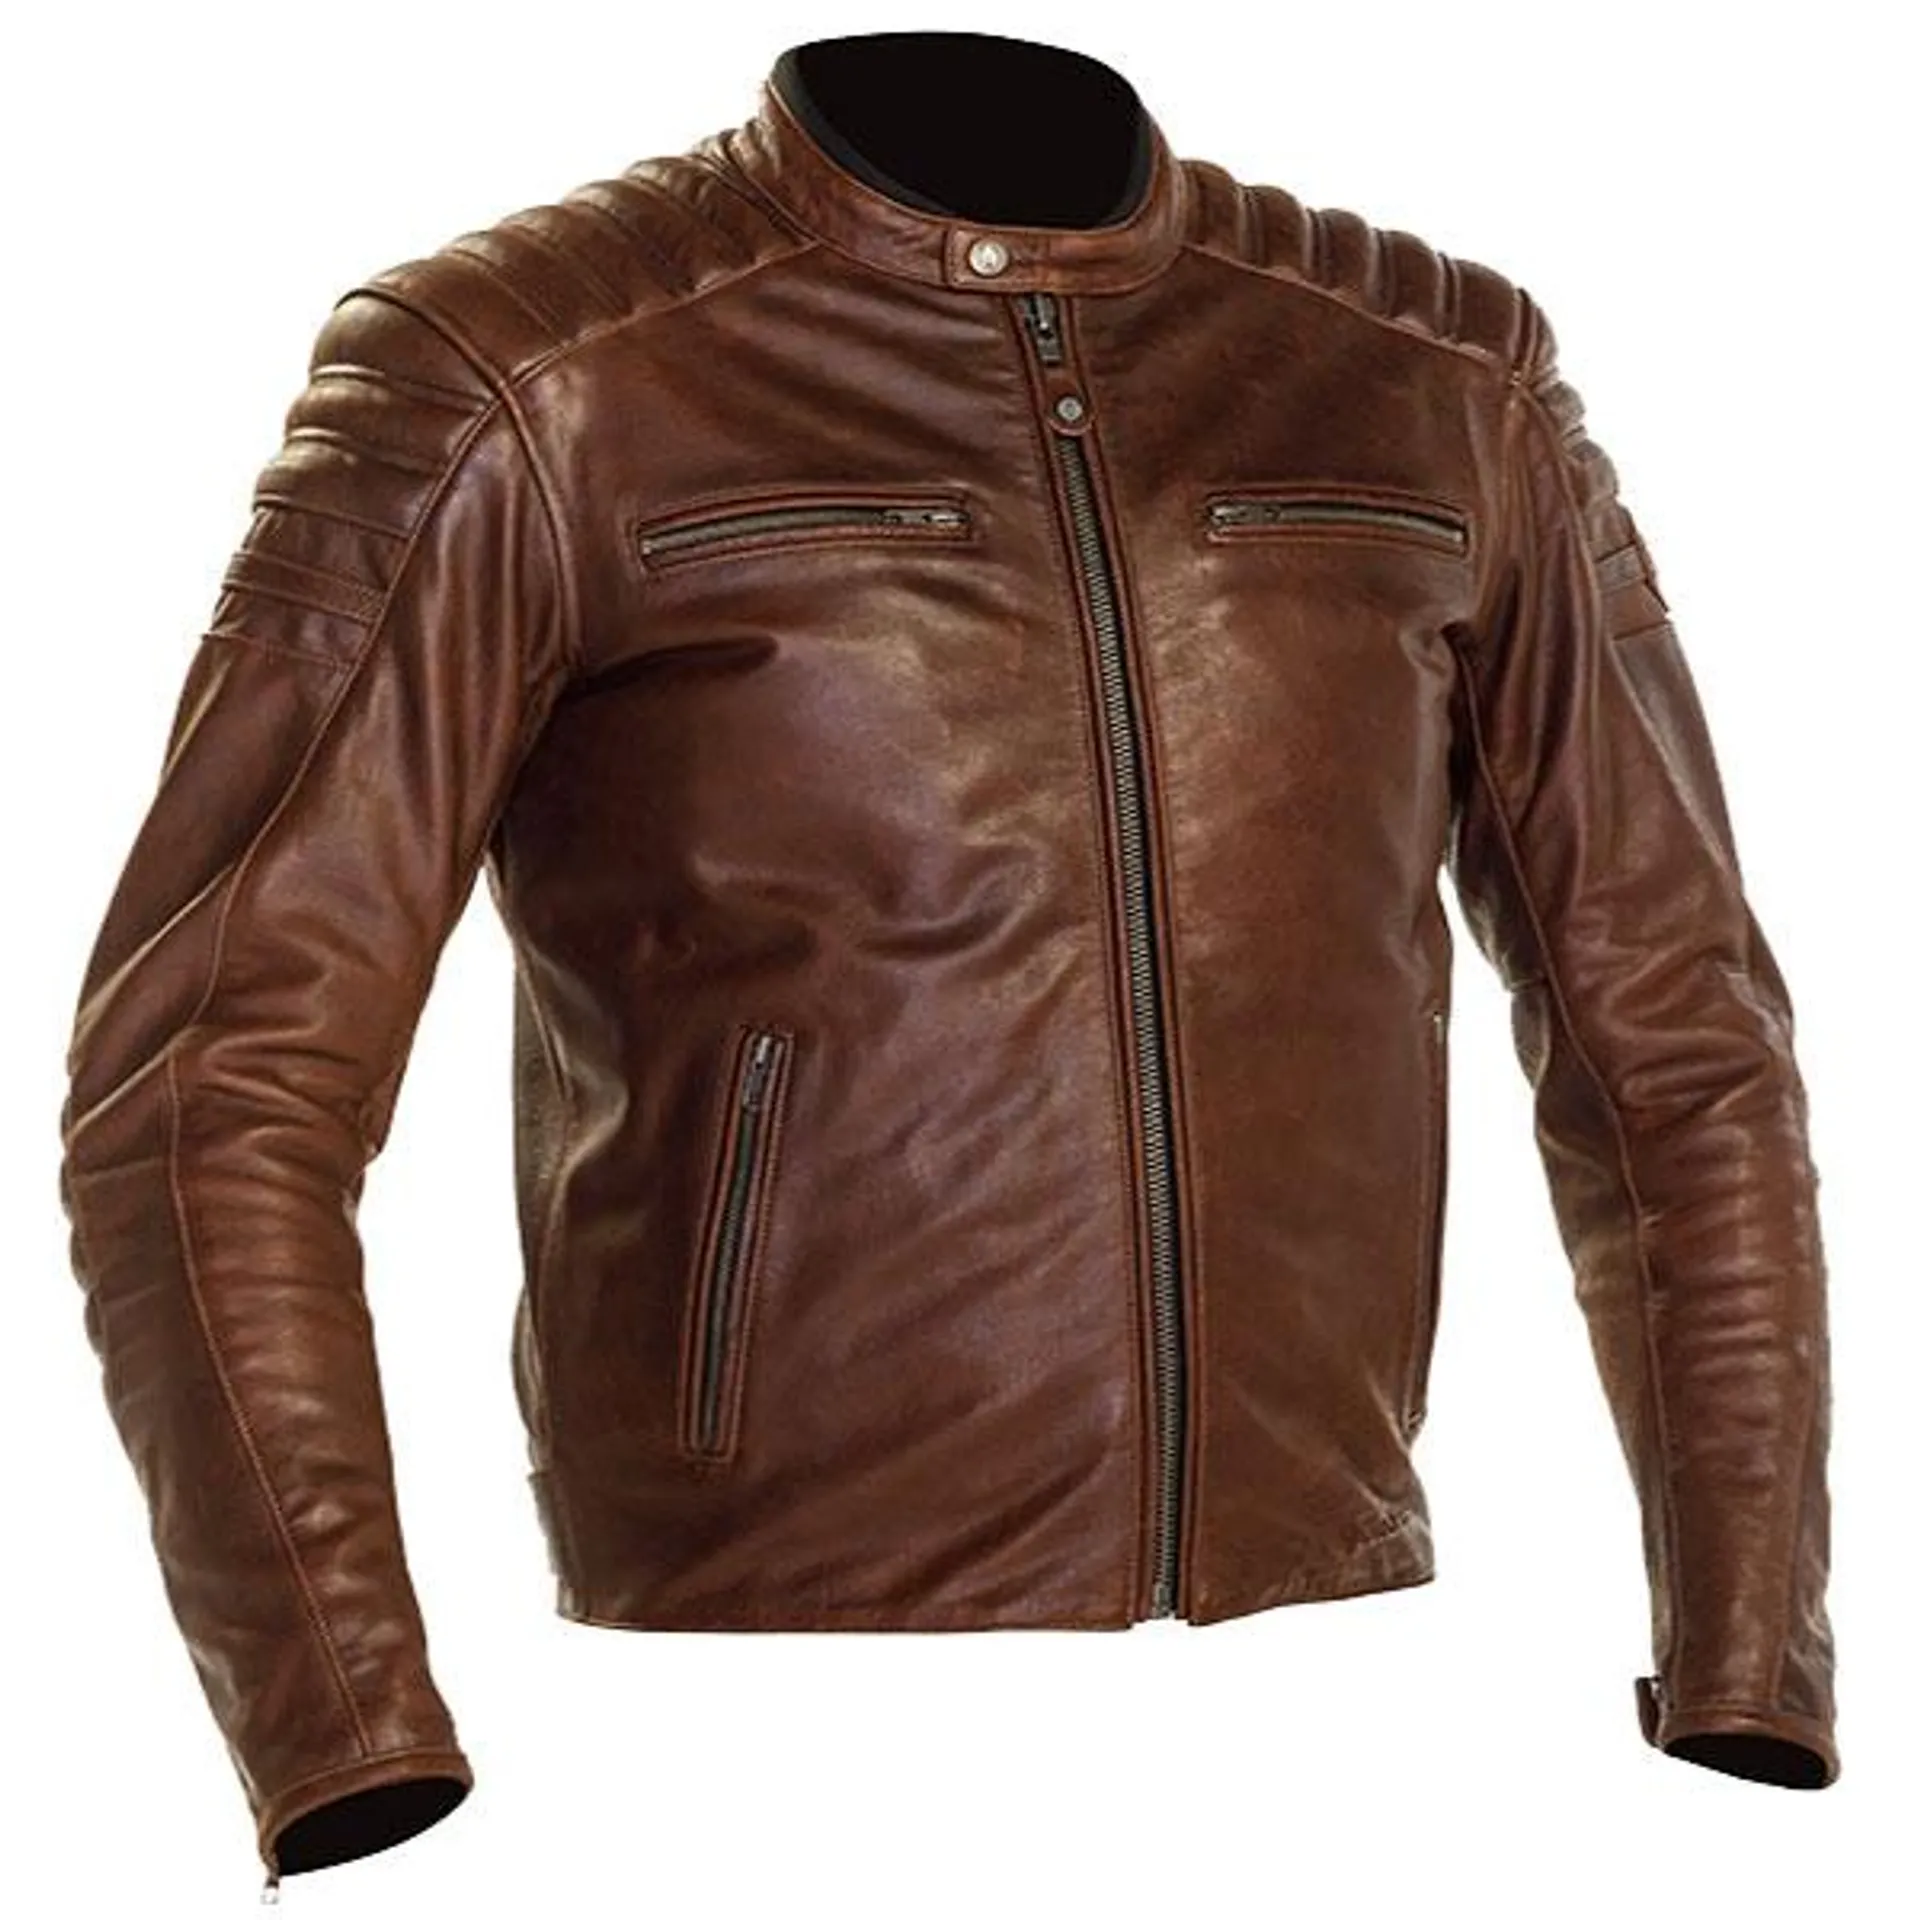 Richa Daytona 2 Leather Jacket - Brown